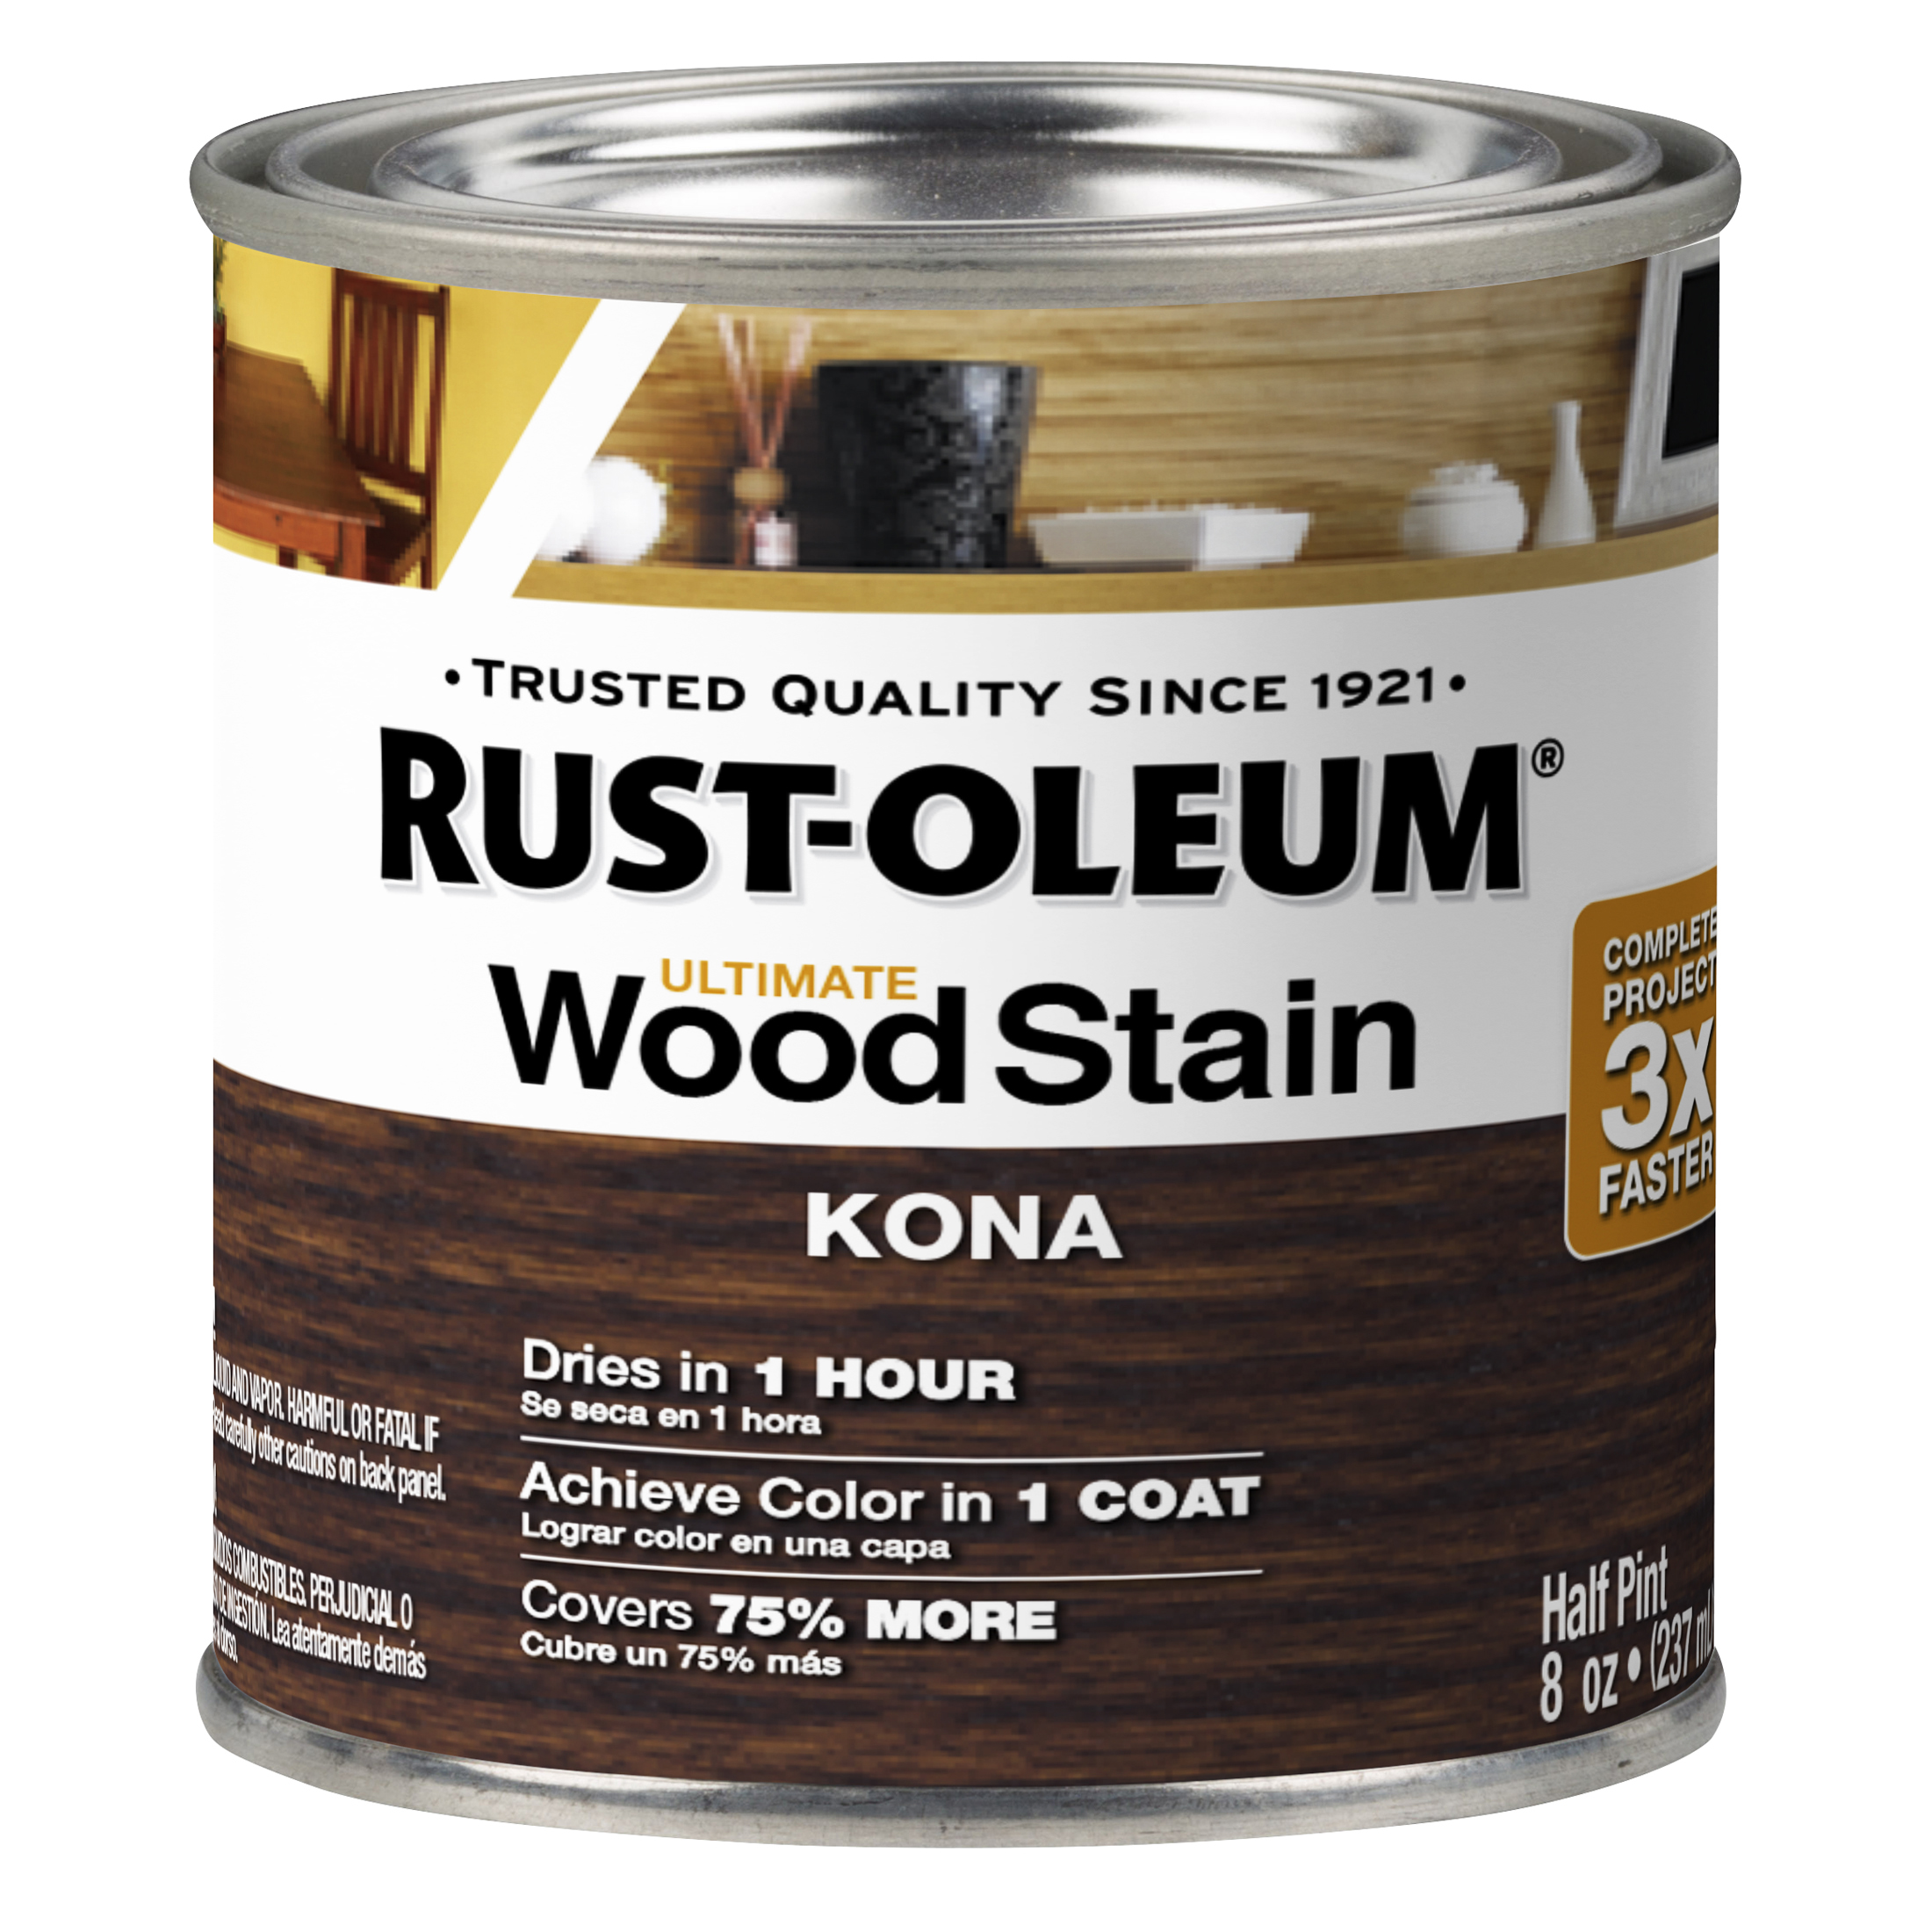 Kona, Rust-Oleum Ultimate Wood Stain-205188, Half Pint - image 2 of 6